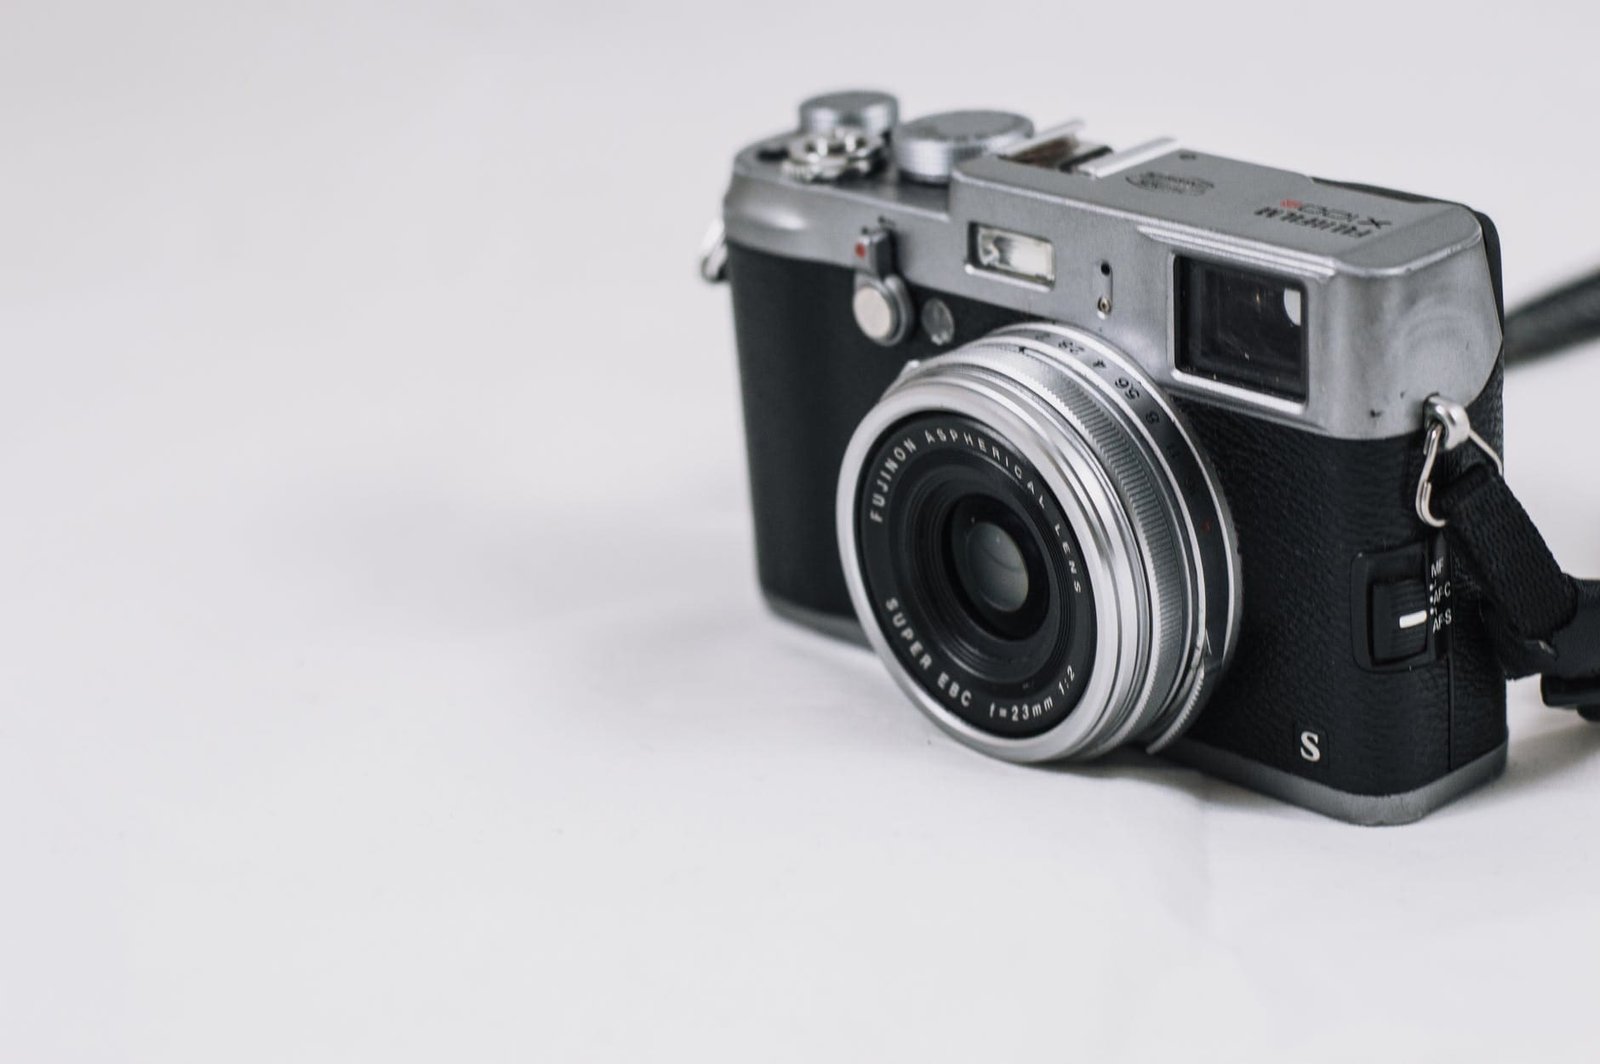 best mirrorless camera under $1000